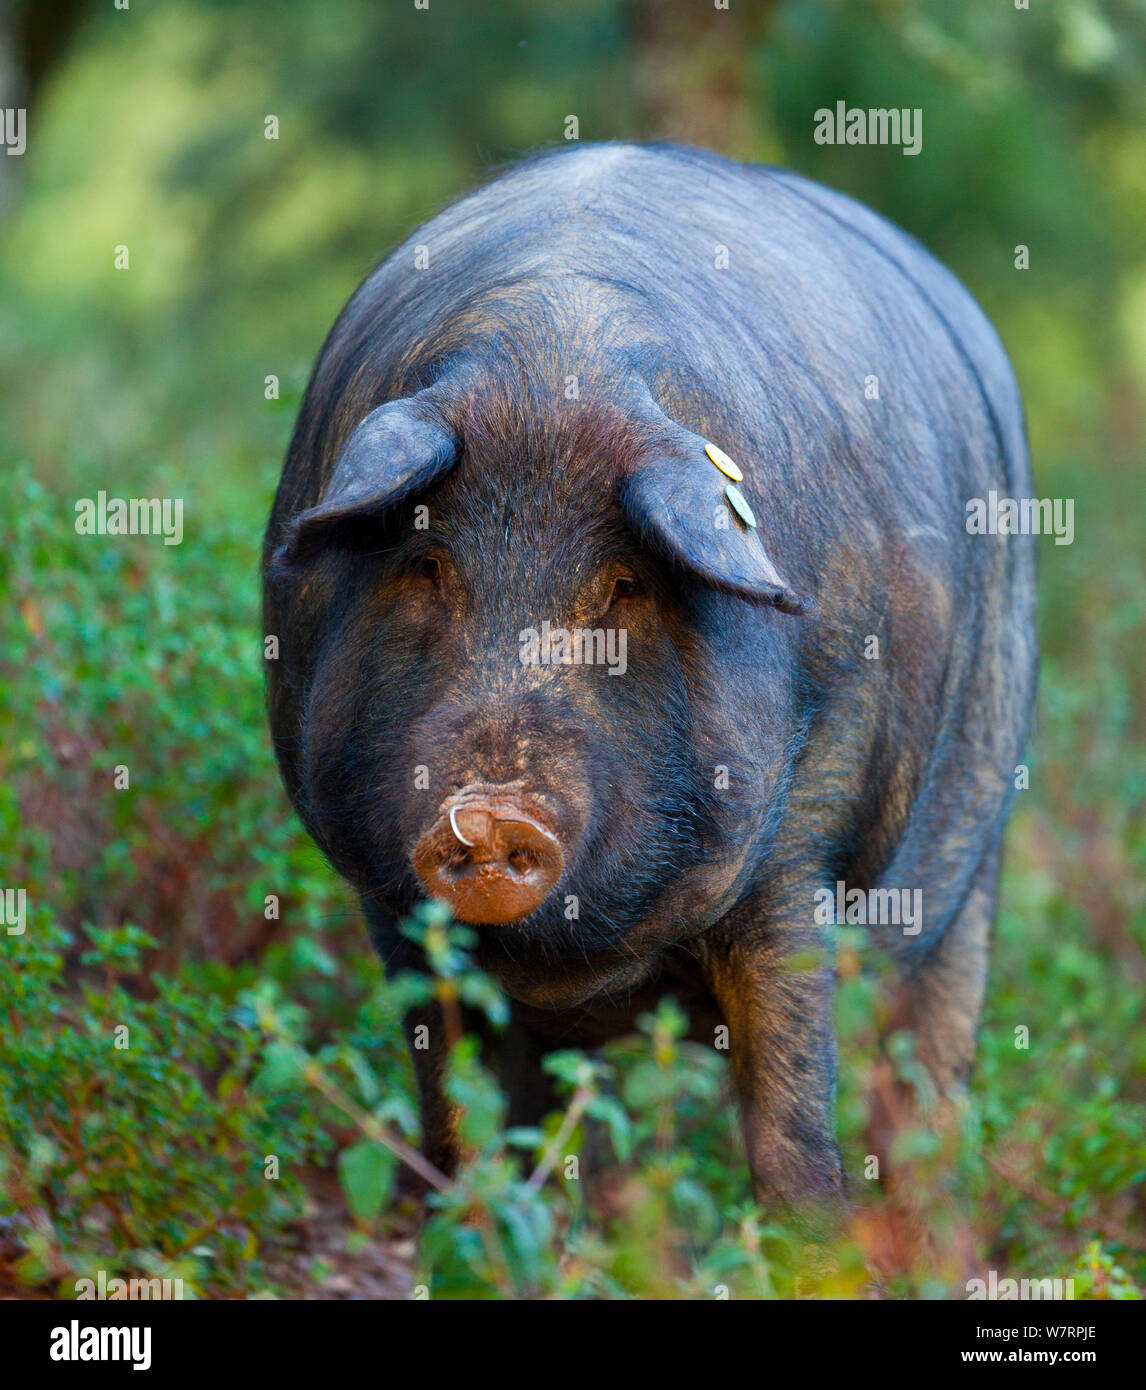 Porc Ibérique, le Parc Naturel de la Sierra de Aracena, Huelva, Andalousie, Espagne, Europe. Utilisé pour produire la race / Jambon Ibérique Jamon Iberico Banque D'Images